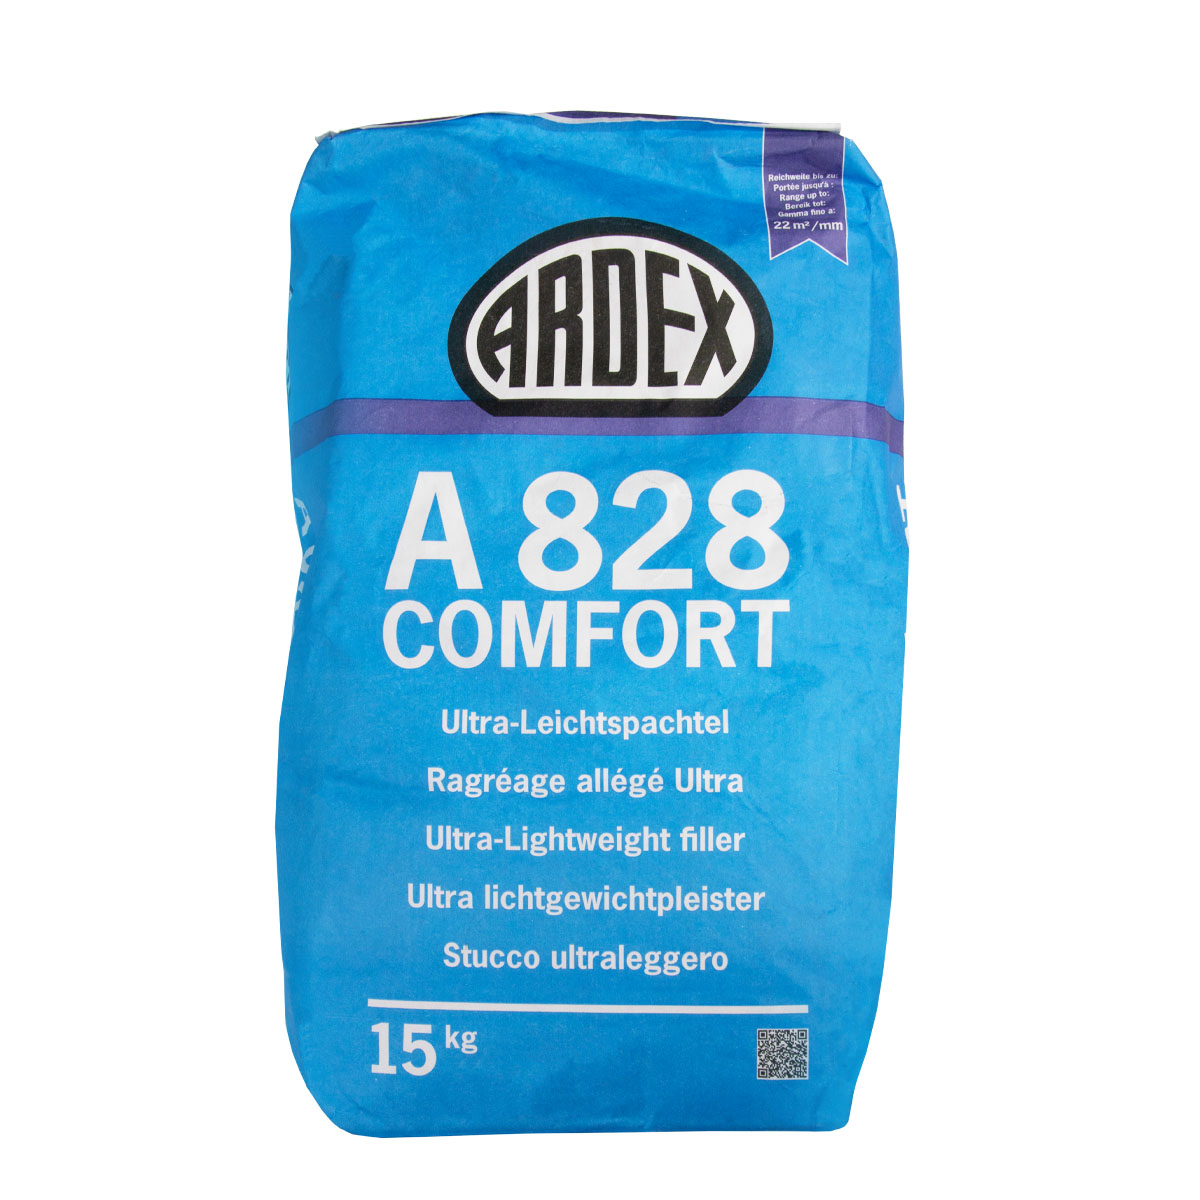 Ardex A 828 Comfort Ultraleichtspachtel 15kg